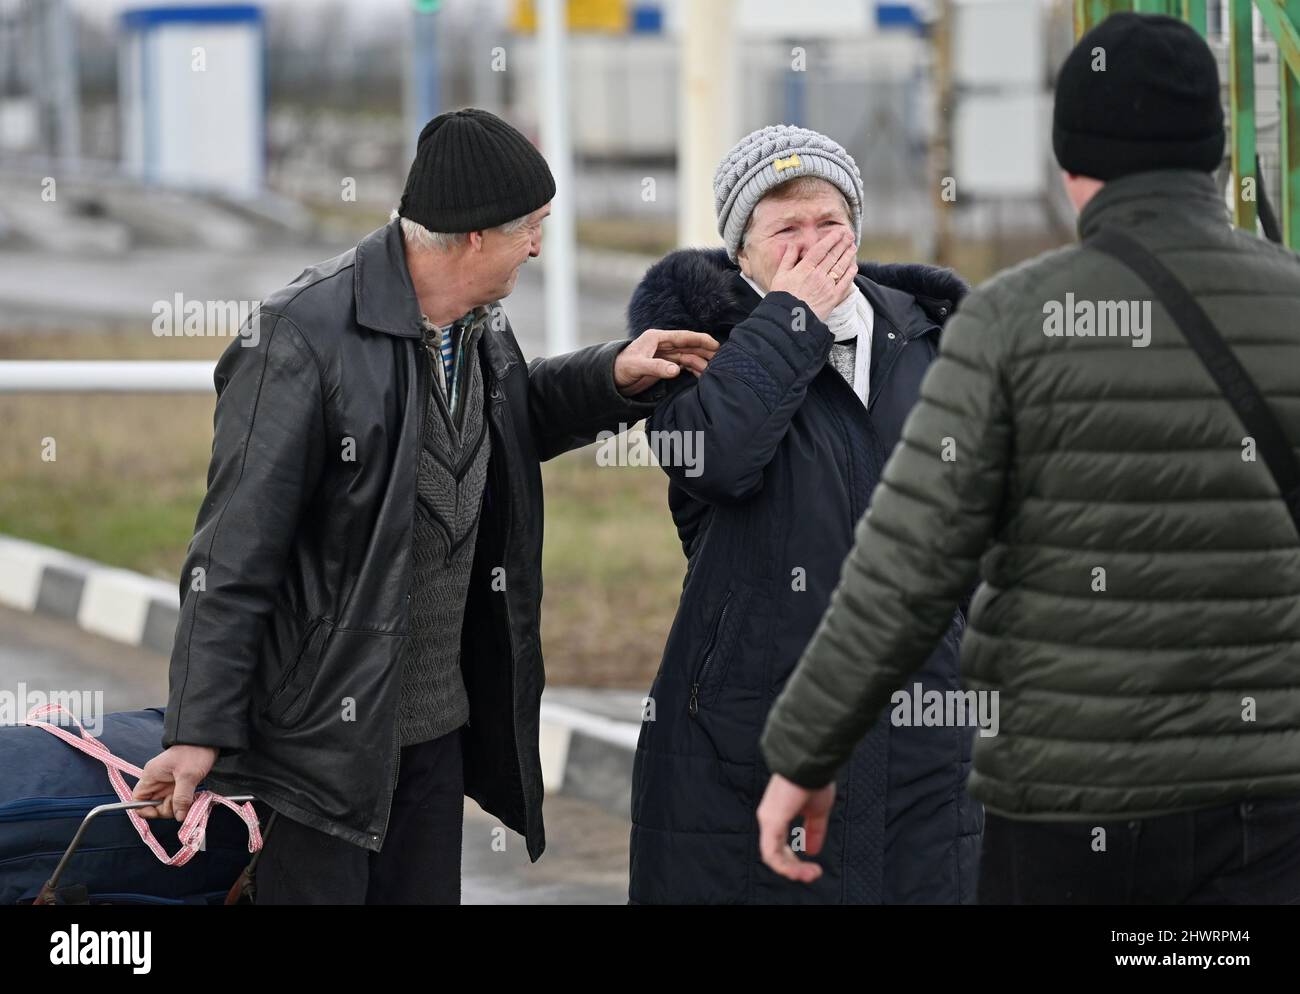 La gente llega al cruce fronterizo Veselo-Voznesenka después de huir de Ucrania a Rusia durante el conflicto entre Ucrania y Rusia, en la región de Rostov, Rusia, el 7 de marzo de 2022. FOTÓGRAFO REUTERS/REUTERS Foto de stock